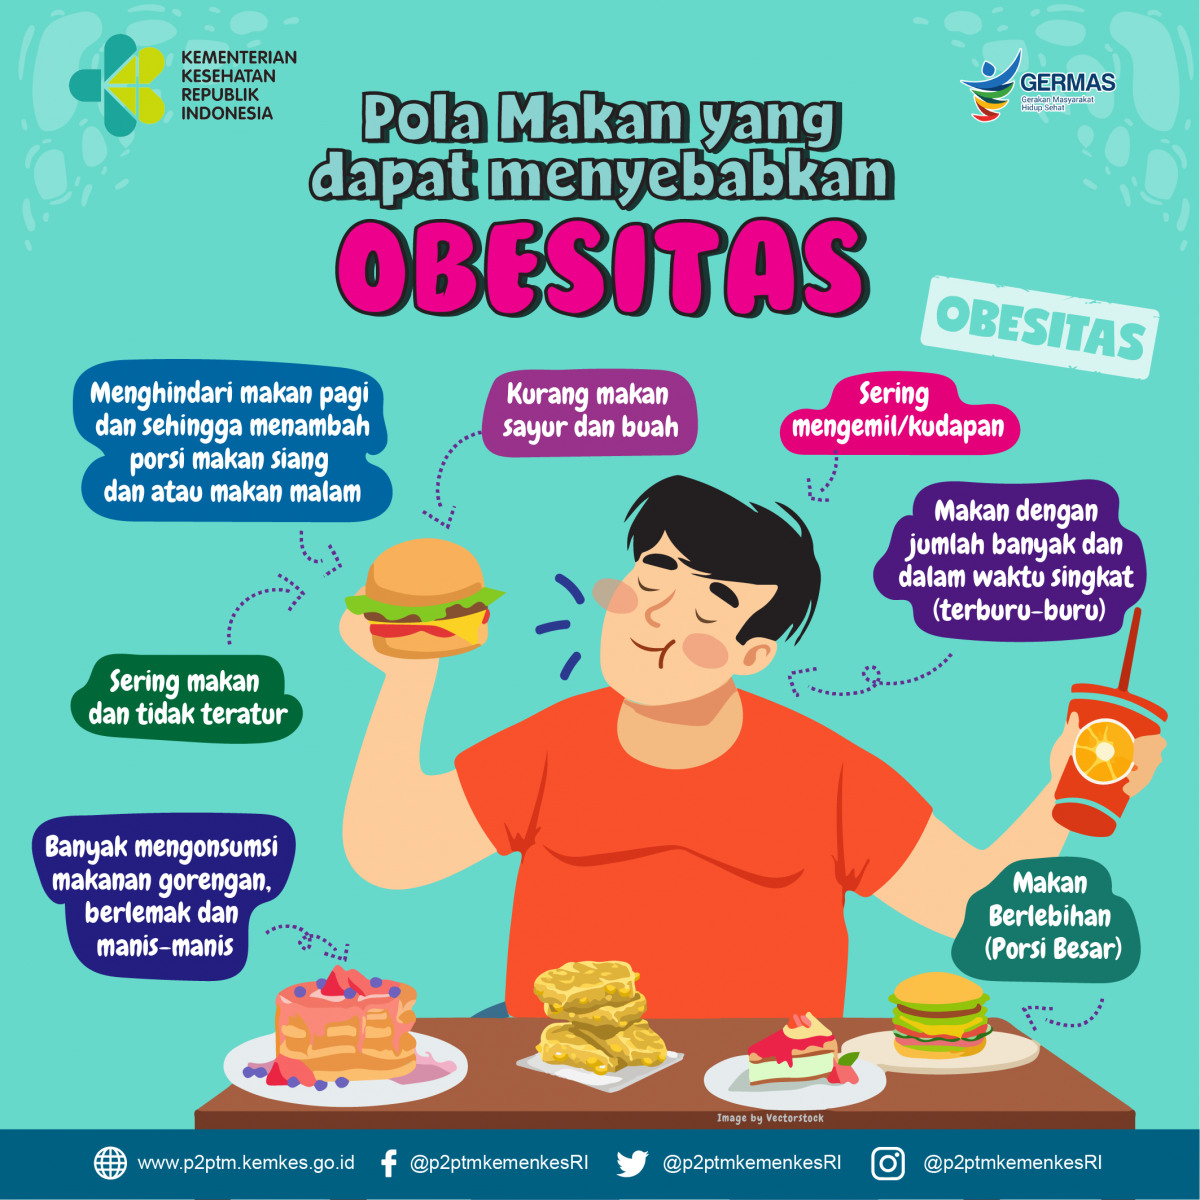 Apa Saja Pola Makan yang Dapat Menyebabkan Obesitas?